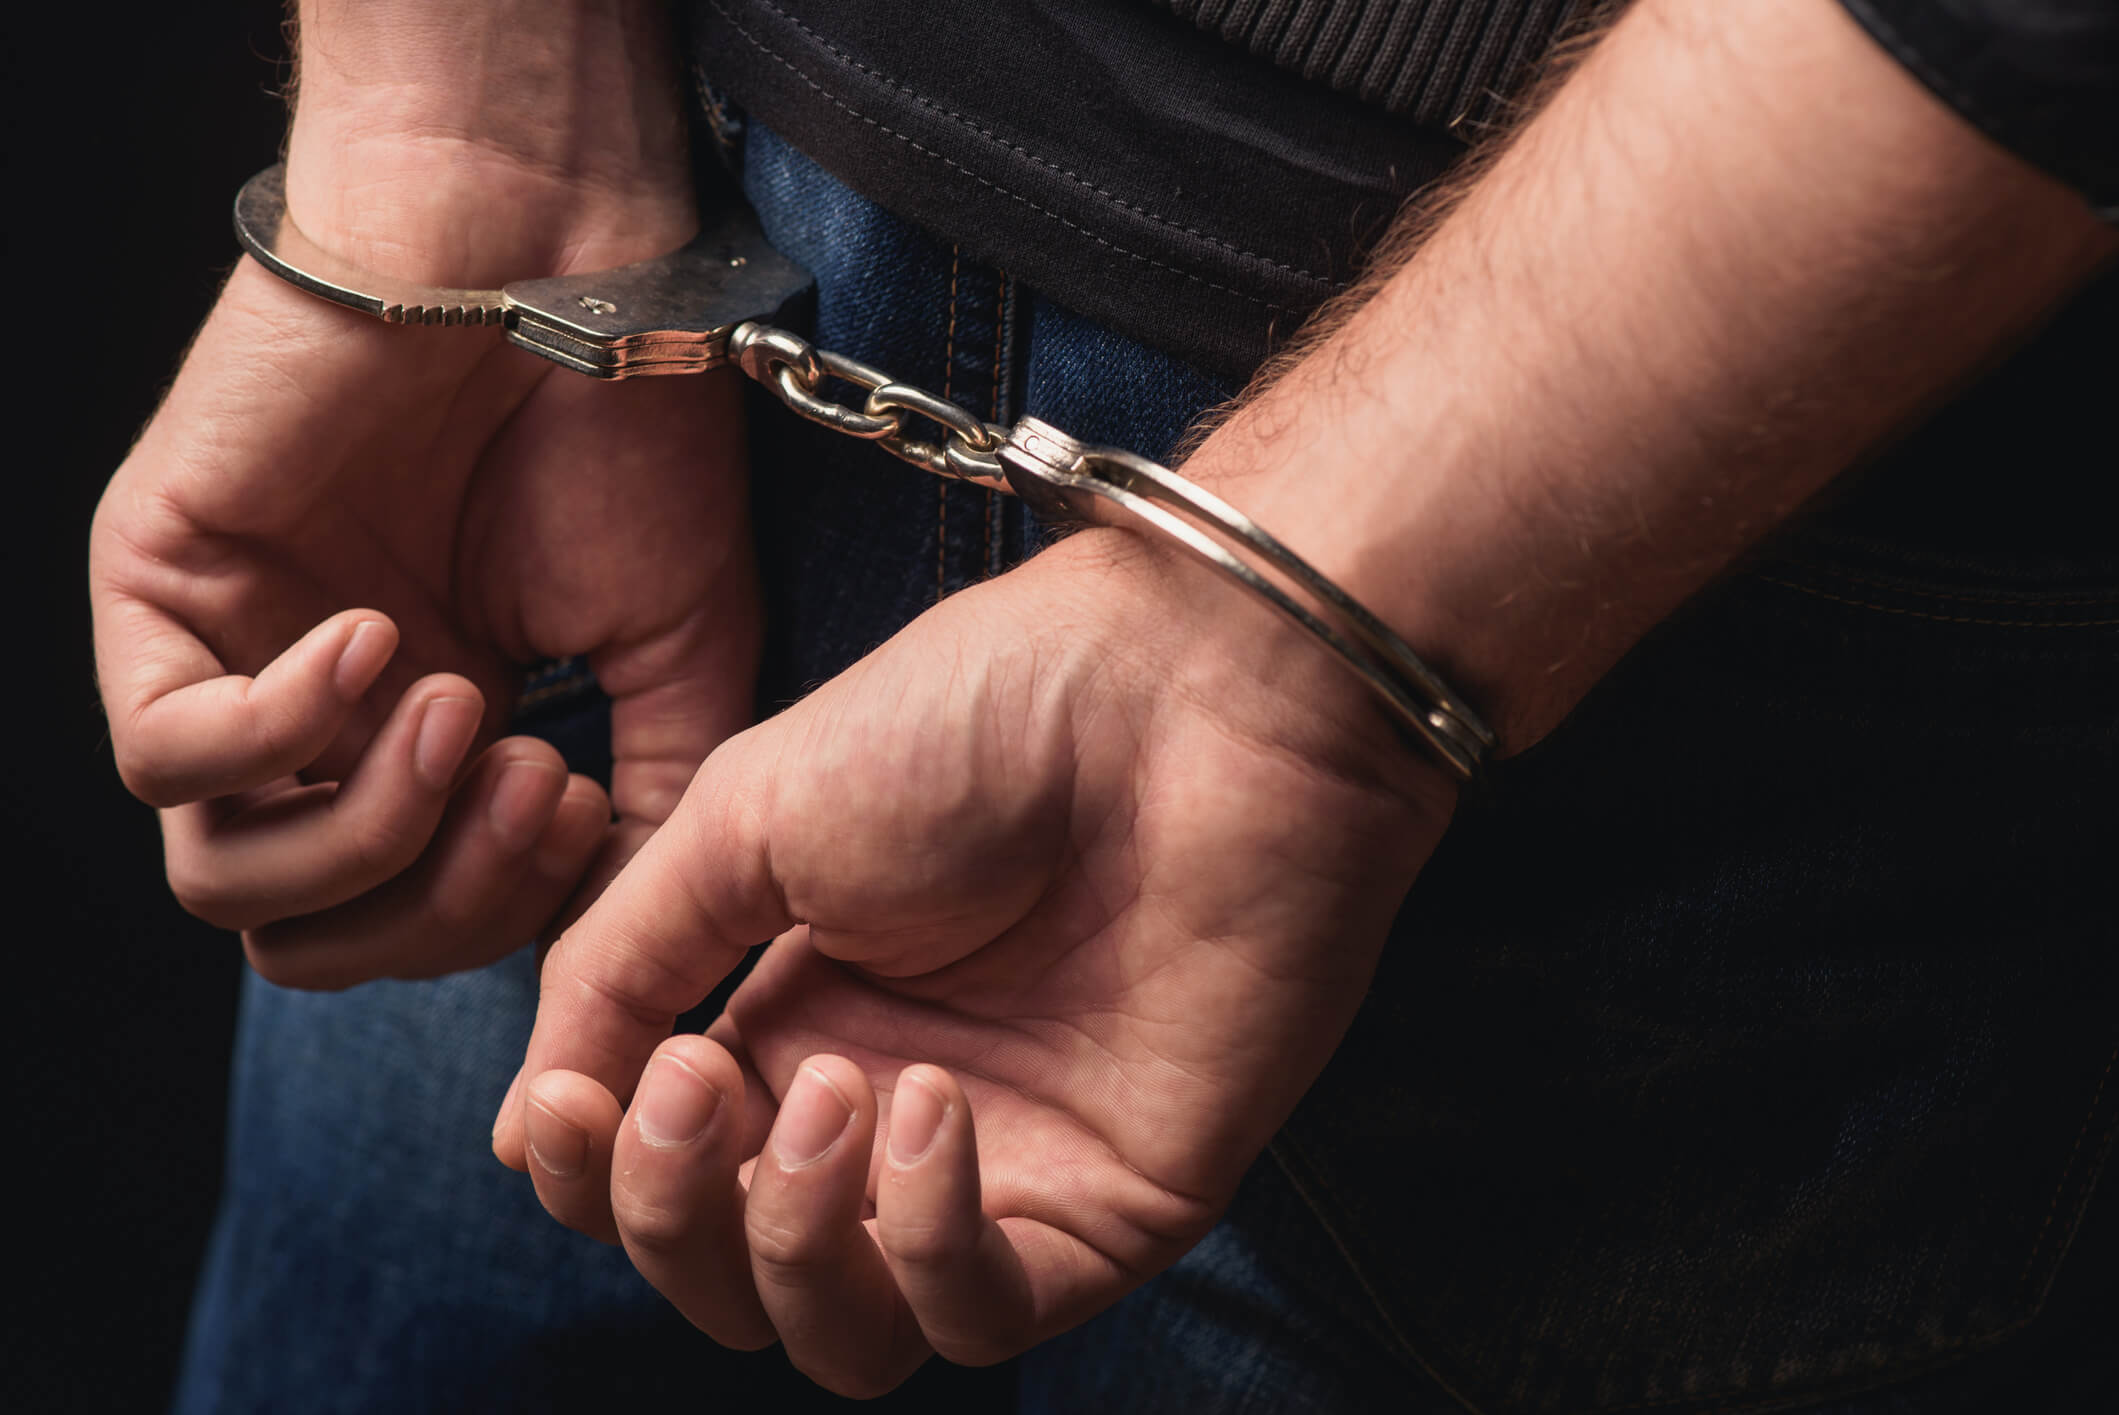 Sulmoi seksualisht një të mitur 13 vjeçare, arrestohet i dyshuari 30 vjeçar